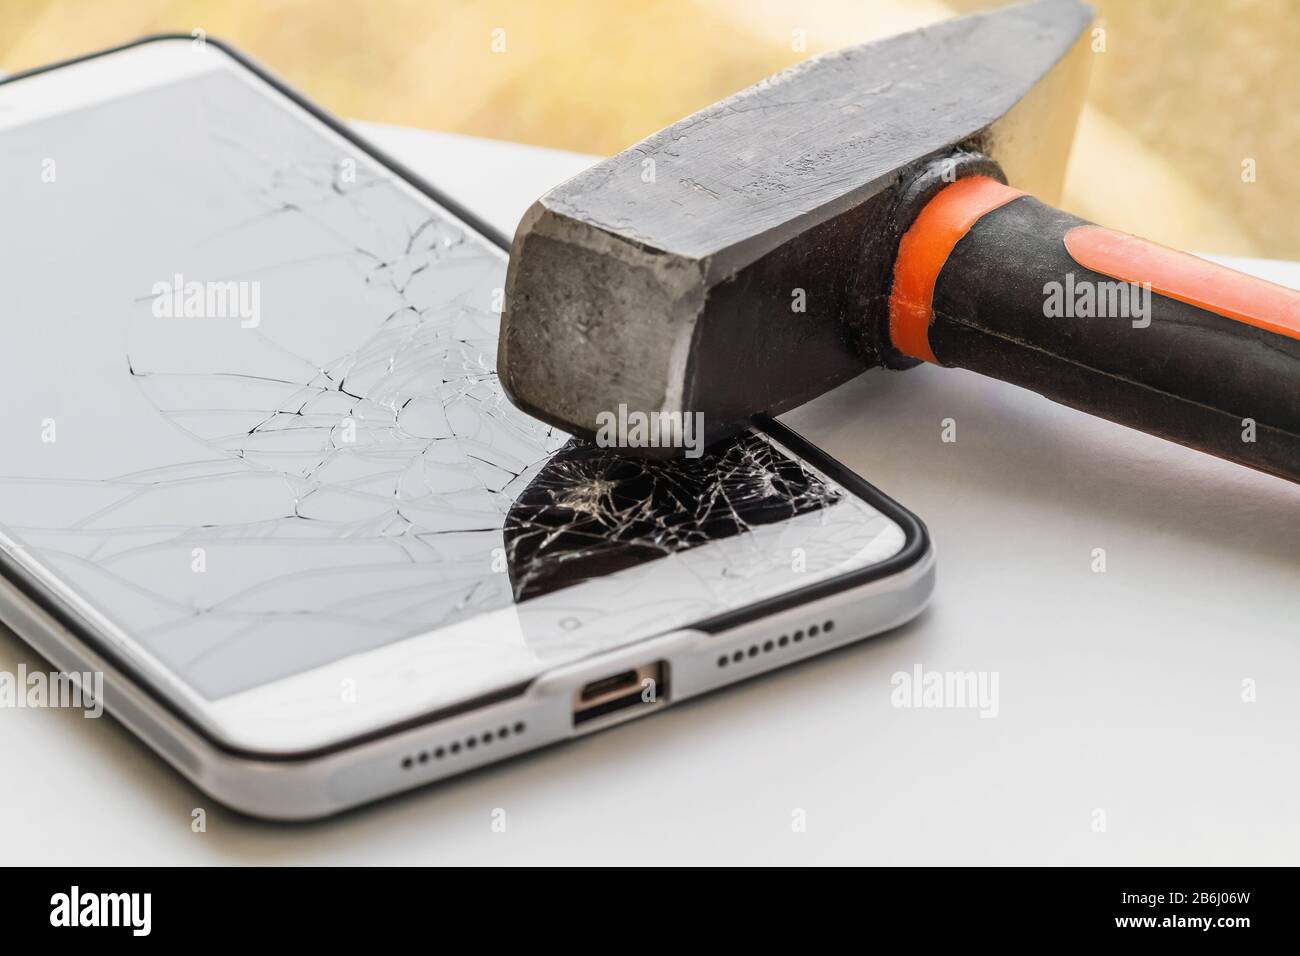 Un marteau se trouve sur le smartphone avec un écran cassé. Le concept de réparation électronique. Gros plan, mise au point sélective Banque D'Images